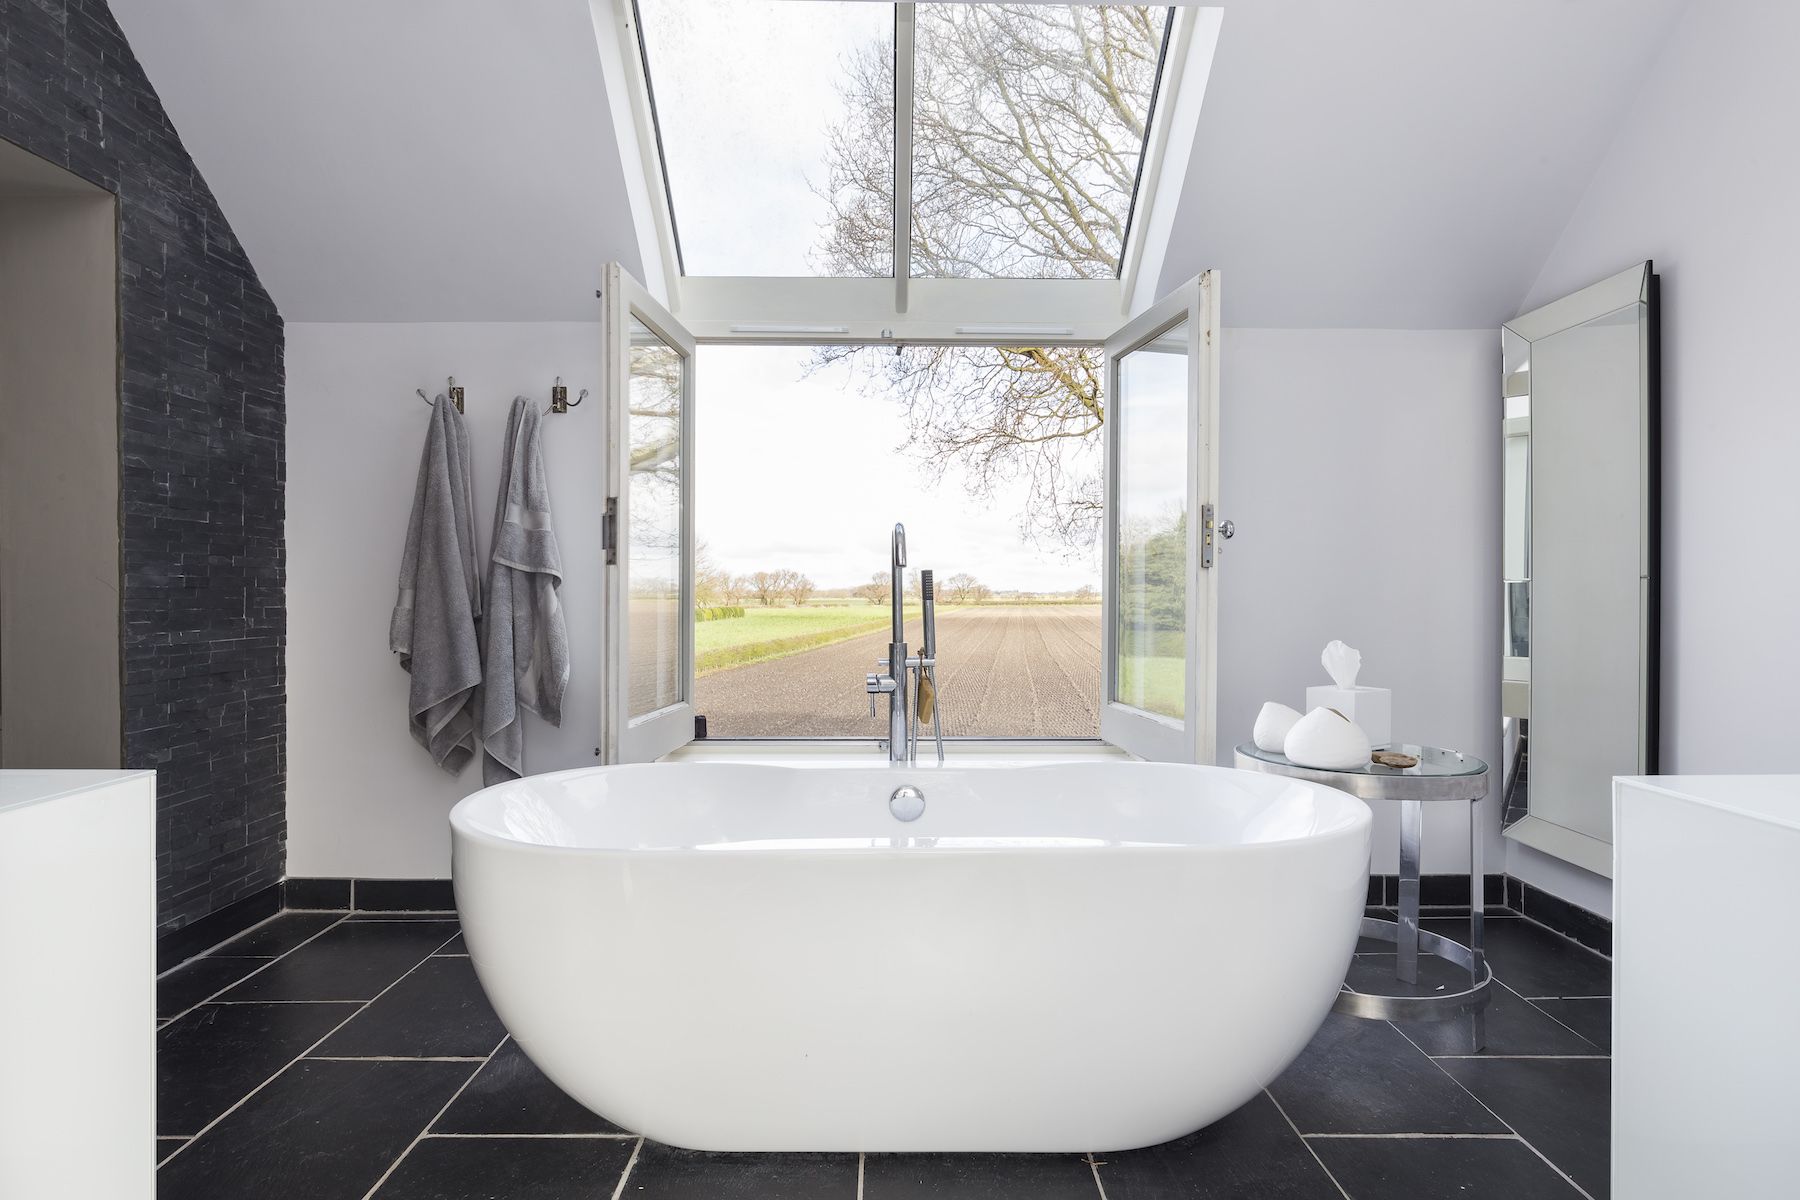 اتجاهات تصميم الحمام 2019 ، حوض الاستحمام في حمام جميل مع إطلالة